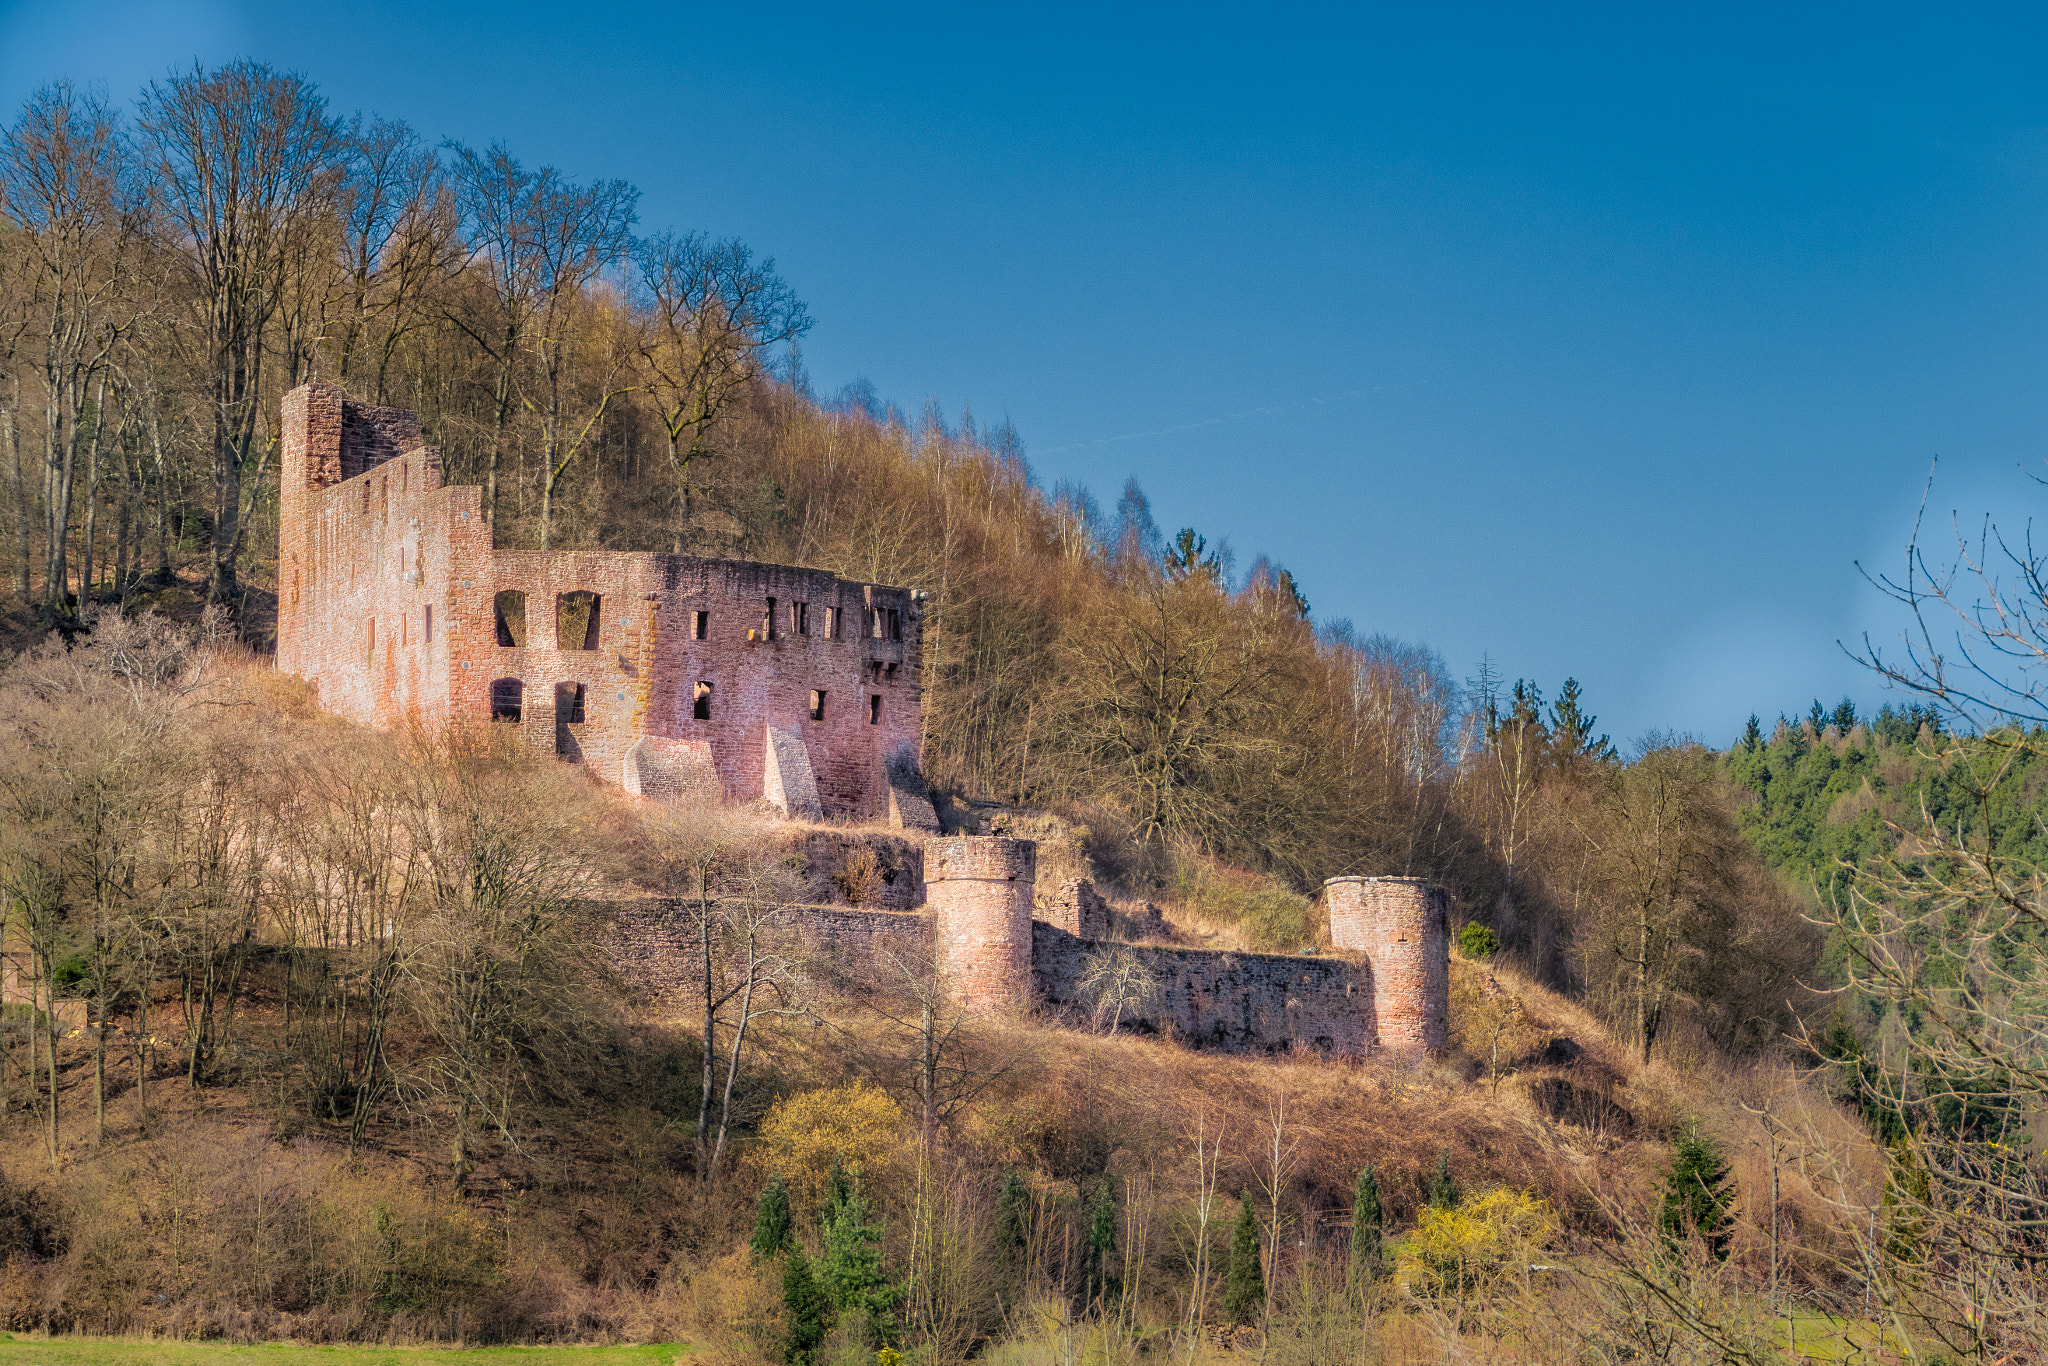 Nikon D5300 sample photo. Ruine freienstein oberhalb gammelsbach, odenwald photography